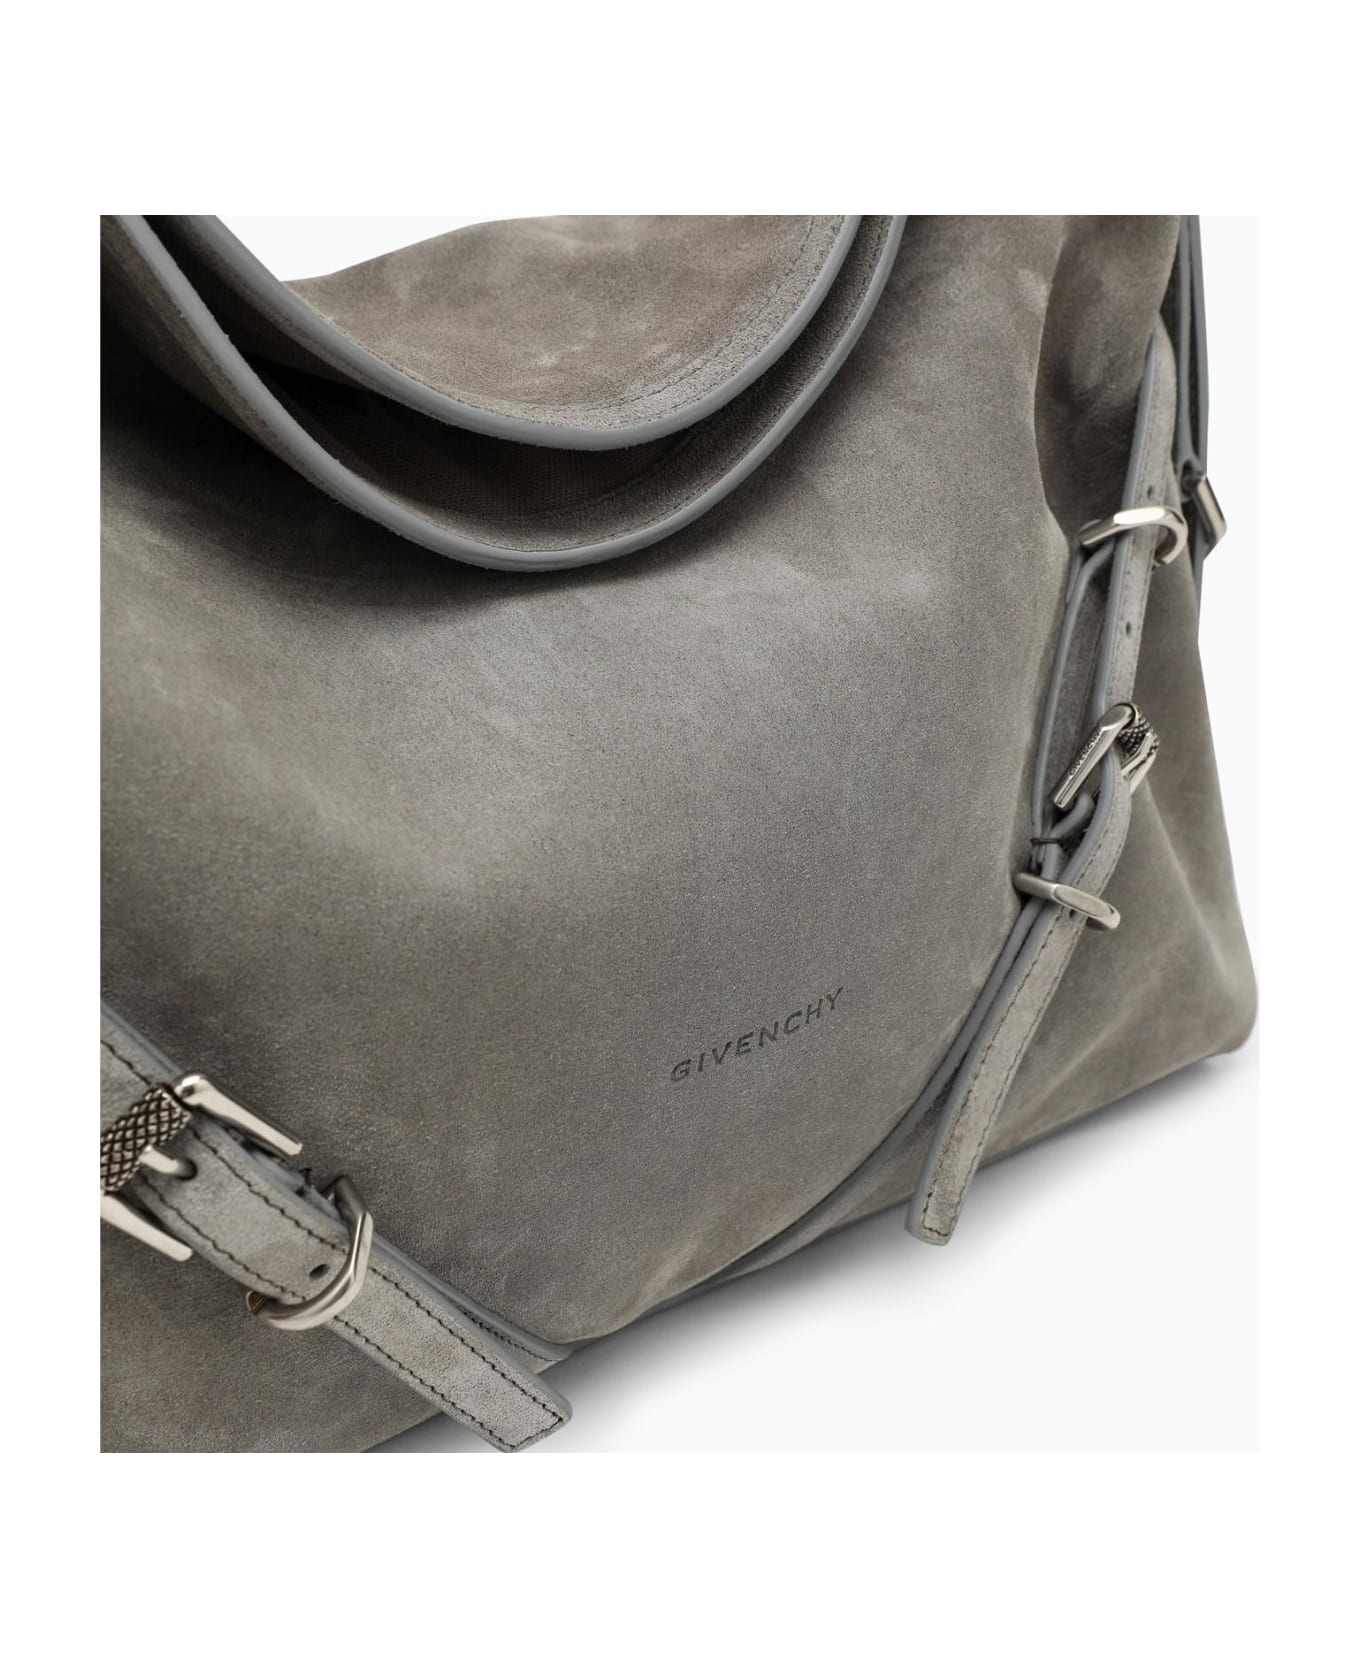 Givenchy Voyou Medium Grey Suede Bag - Grey